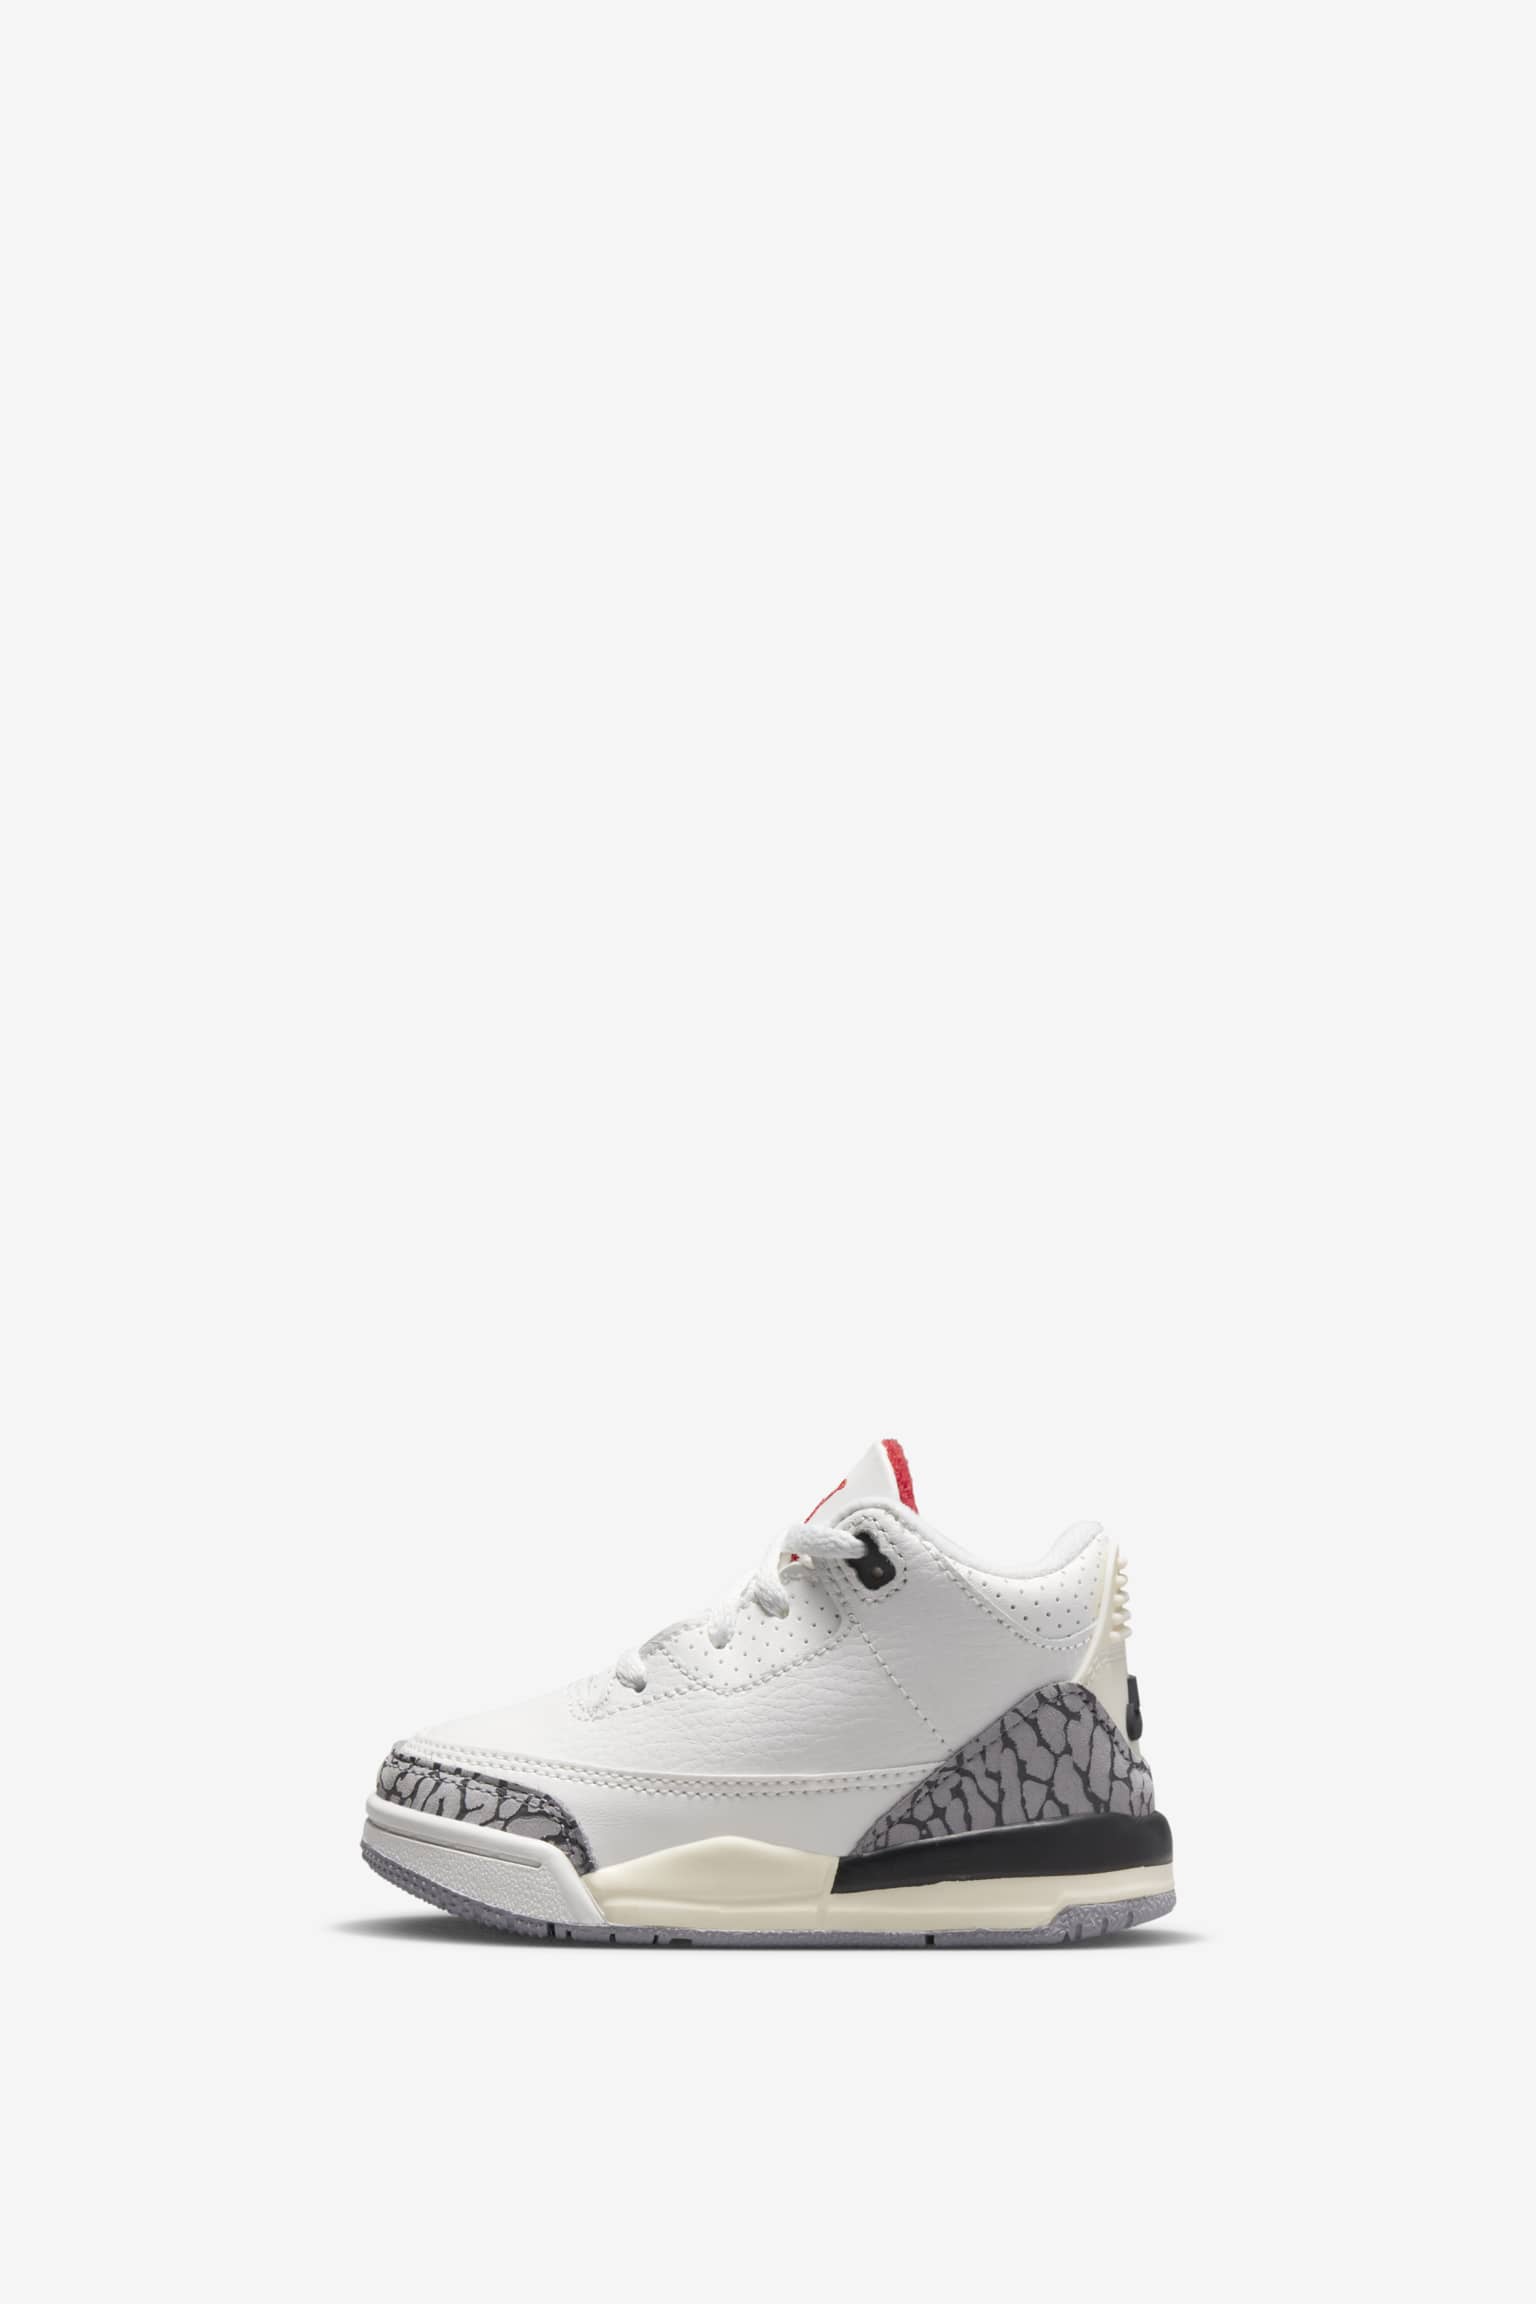 Fecha de lanzamiento de Air Jordan 3 "White Cement Reimagined" (DN3707-100). Nike SNKRS ES